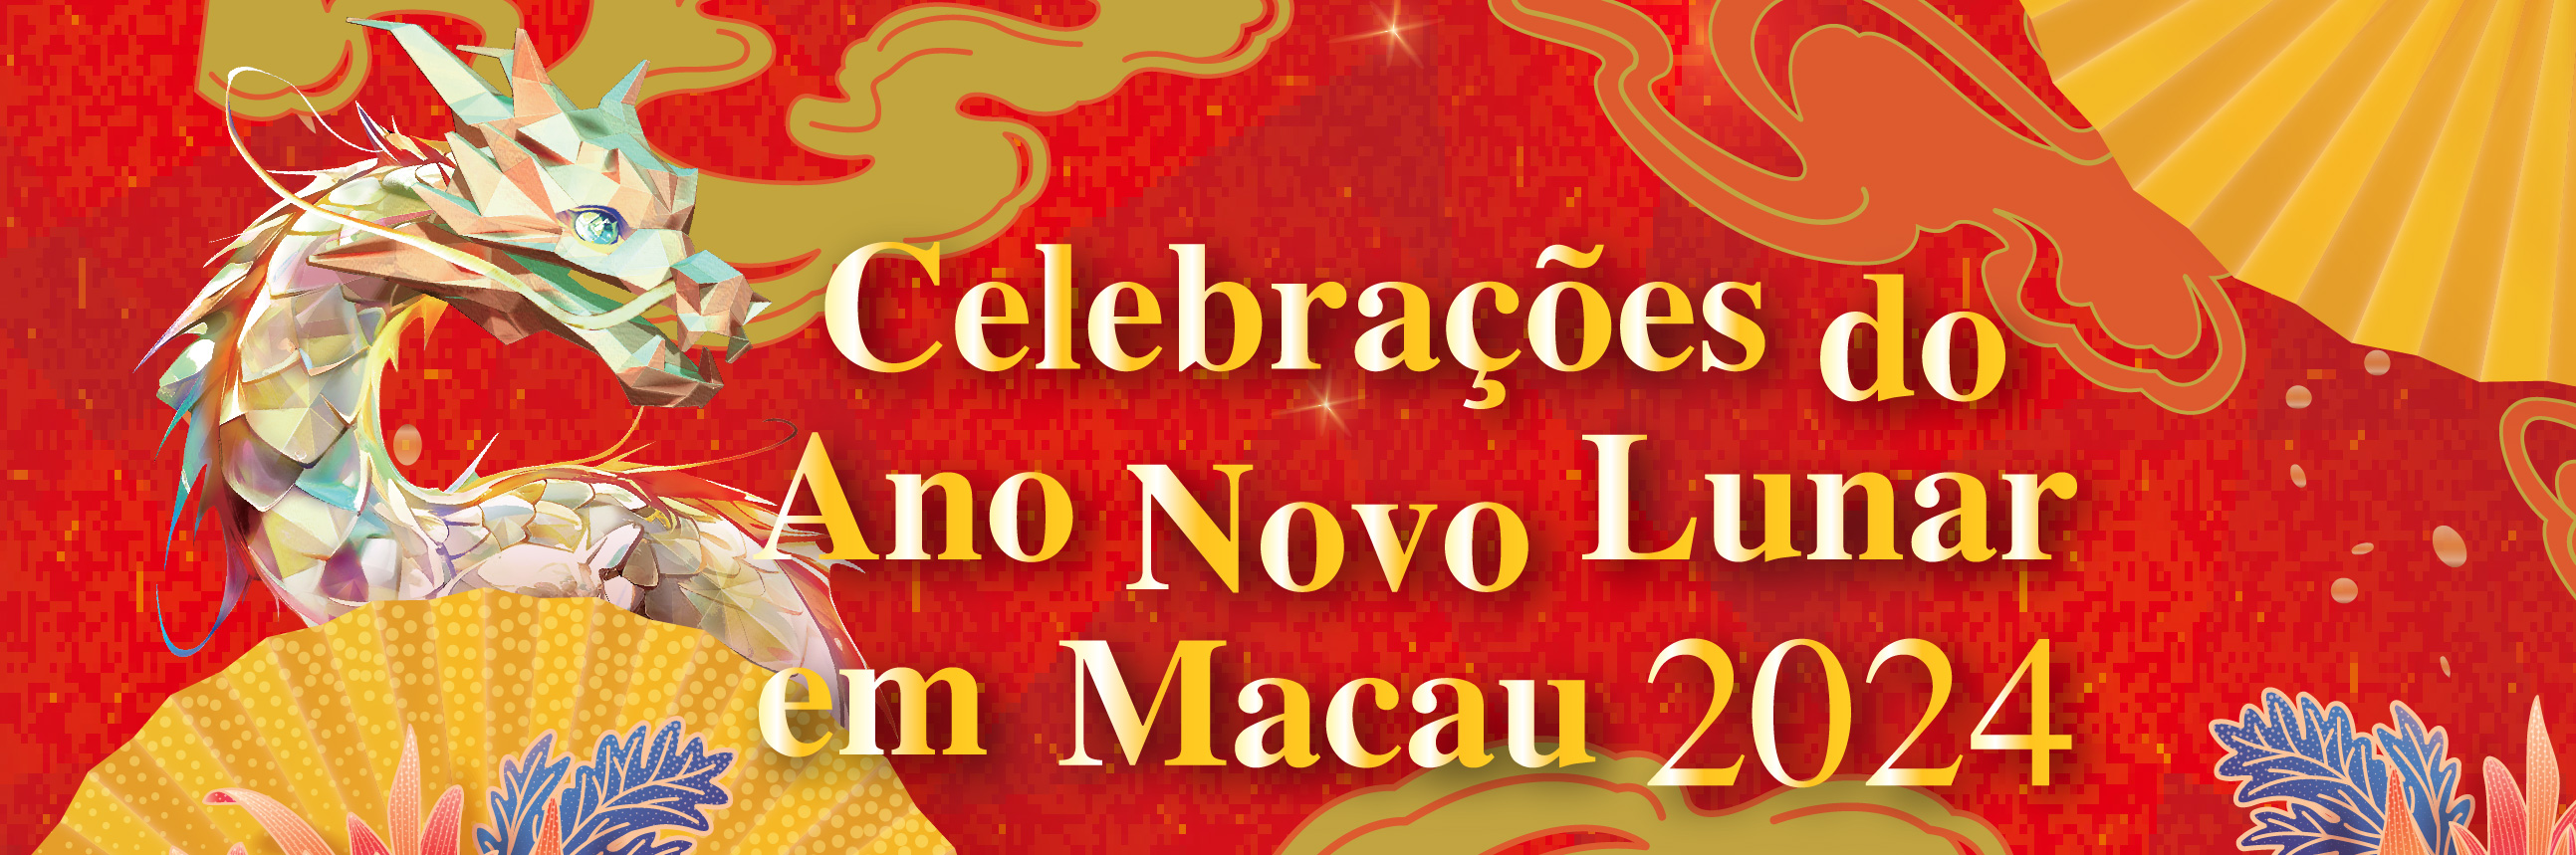 Celebrações do Ano Novo Lunar em Macau 2024